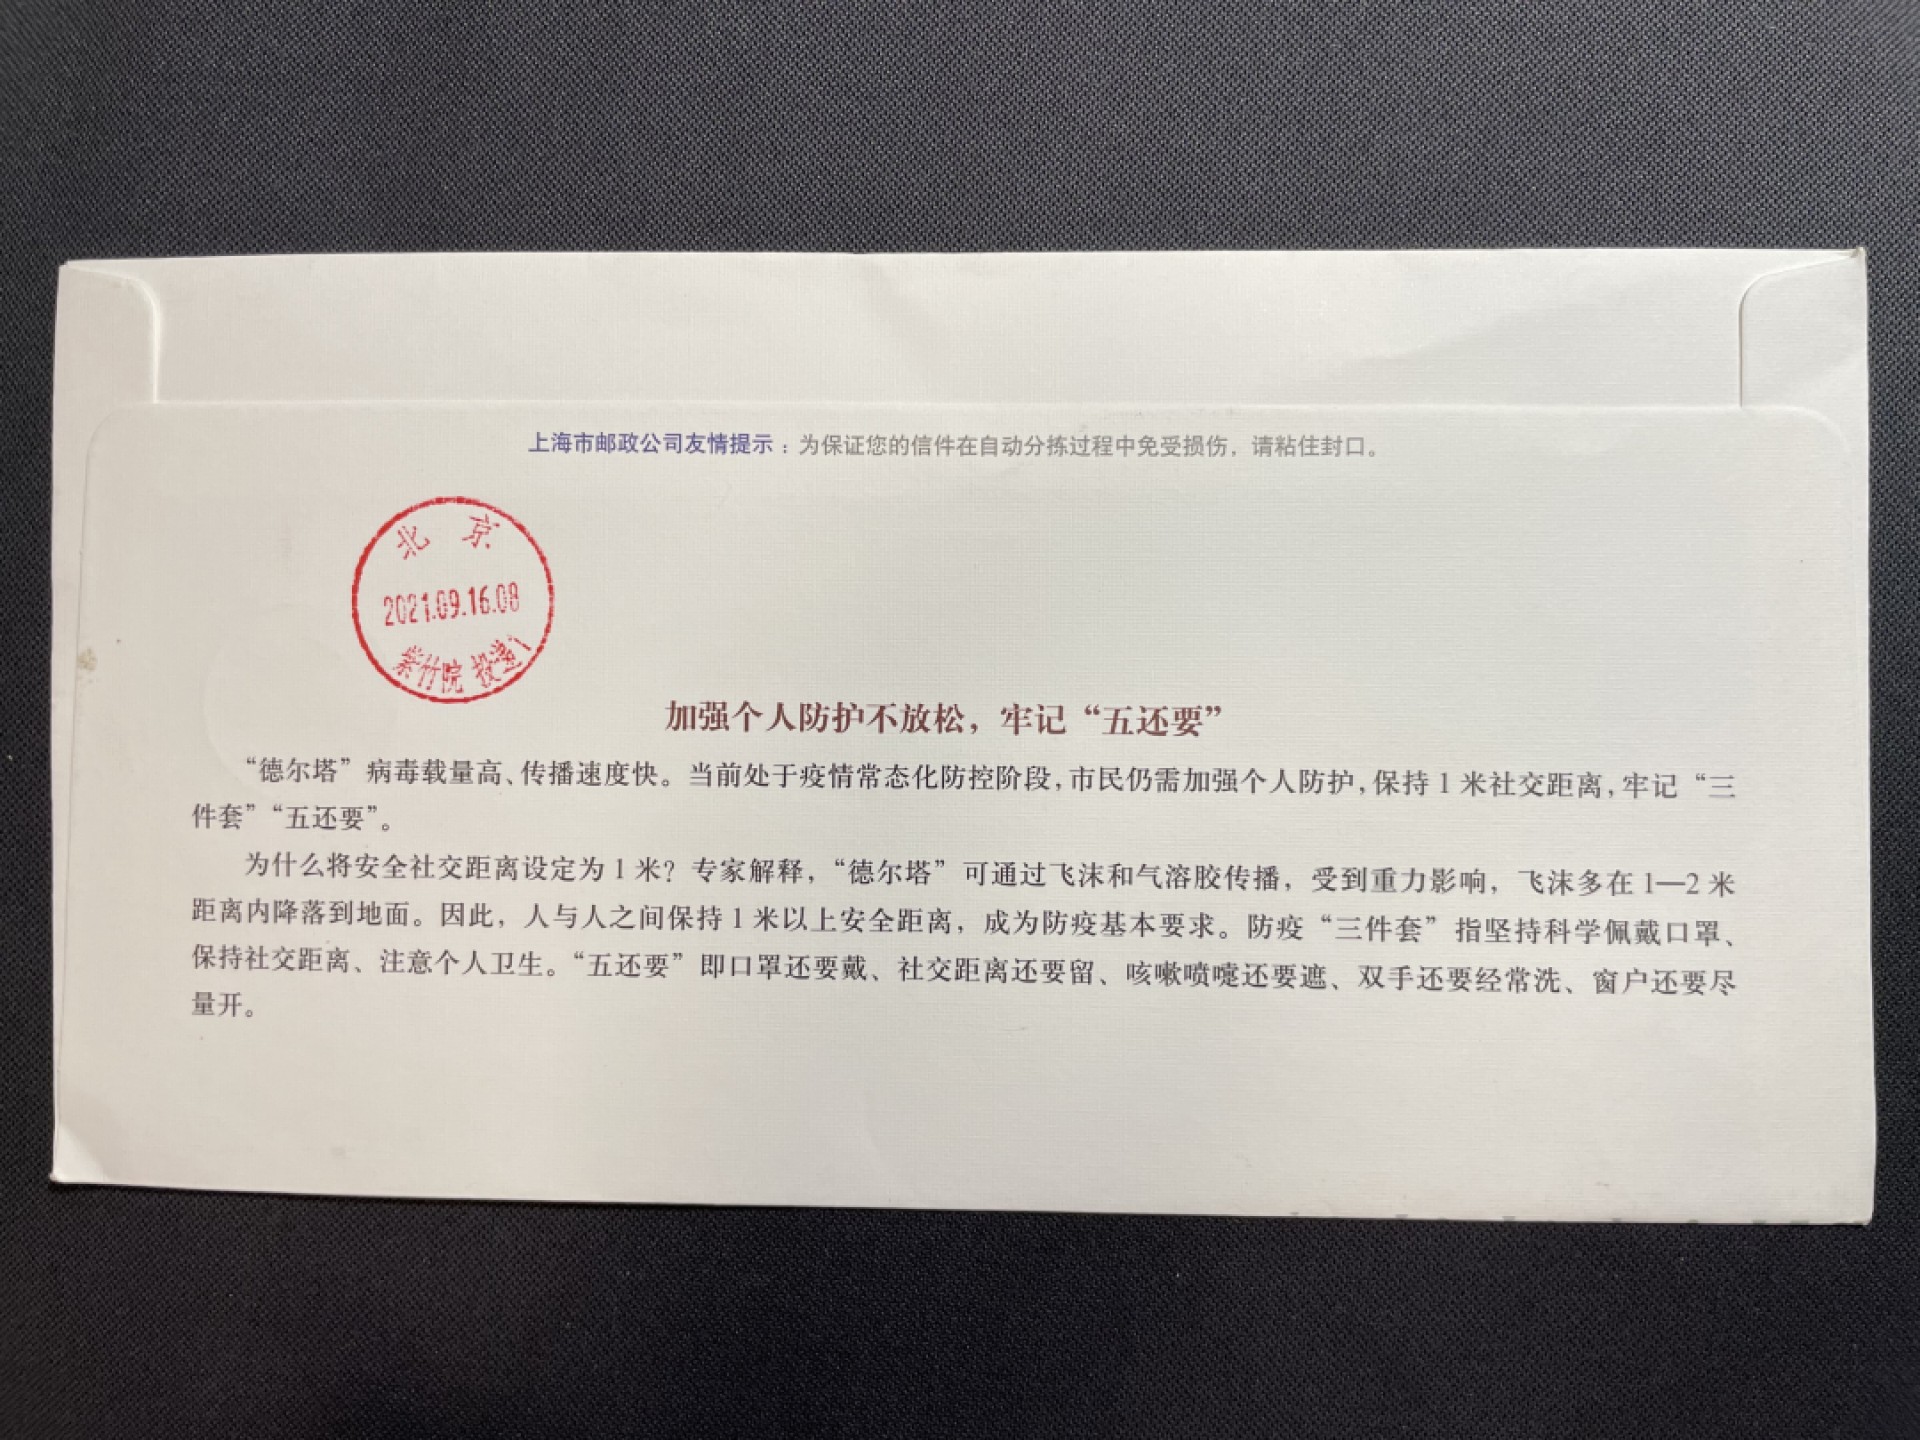 【邮资机宣传戳】上海抗疫邮资机 口罩还要继续戴 首日实寄